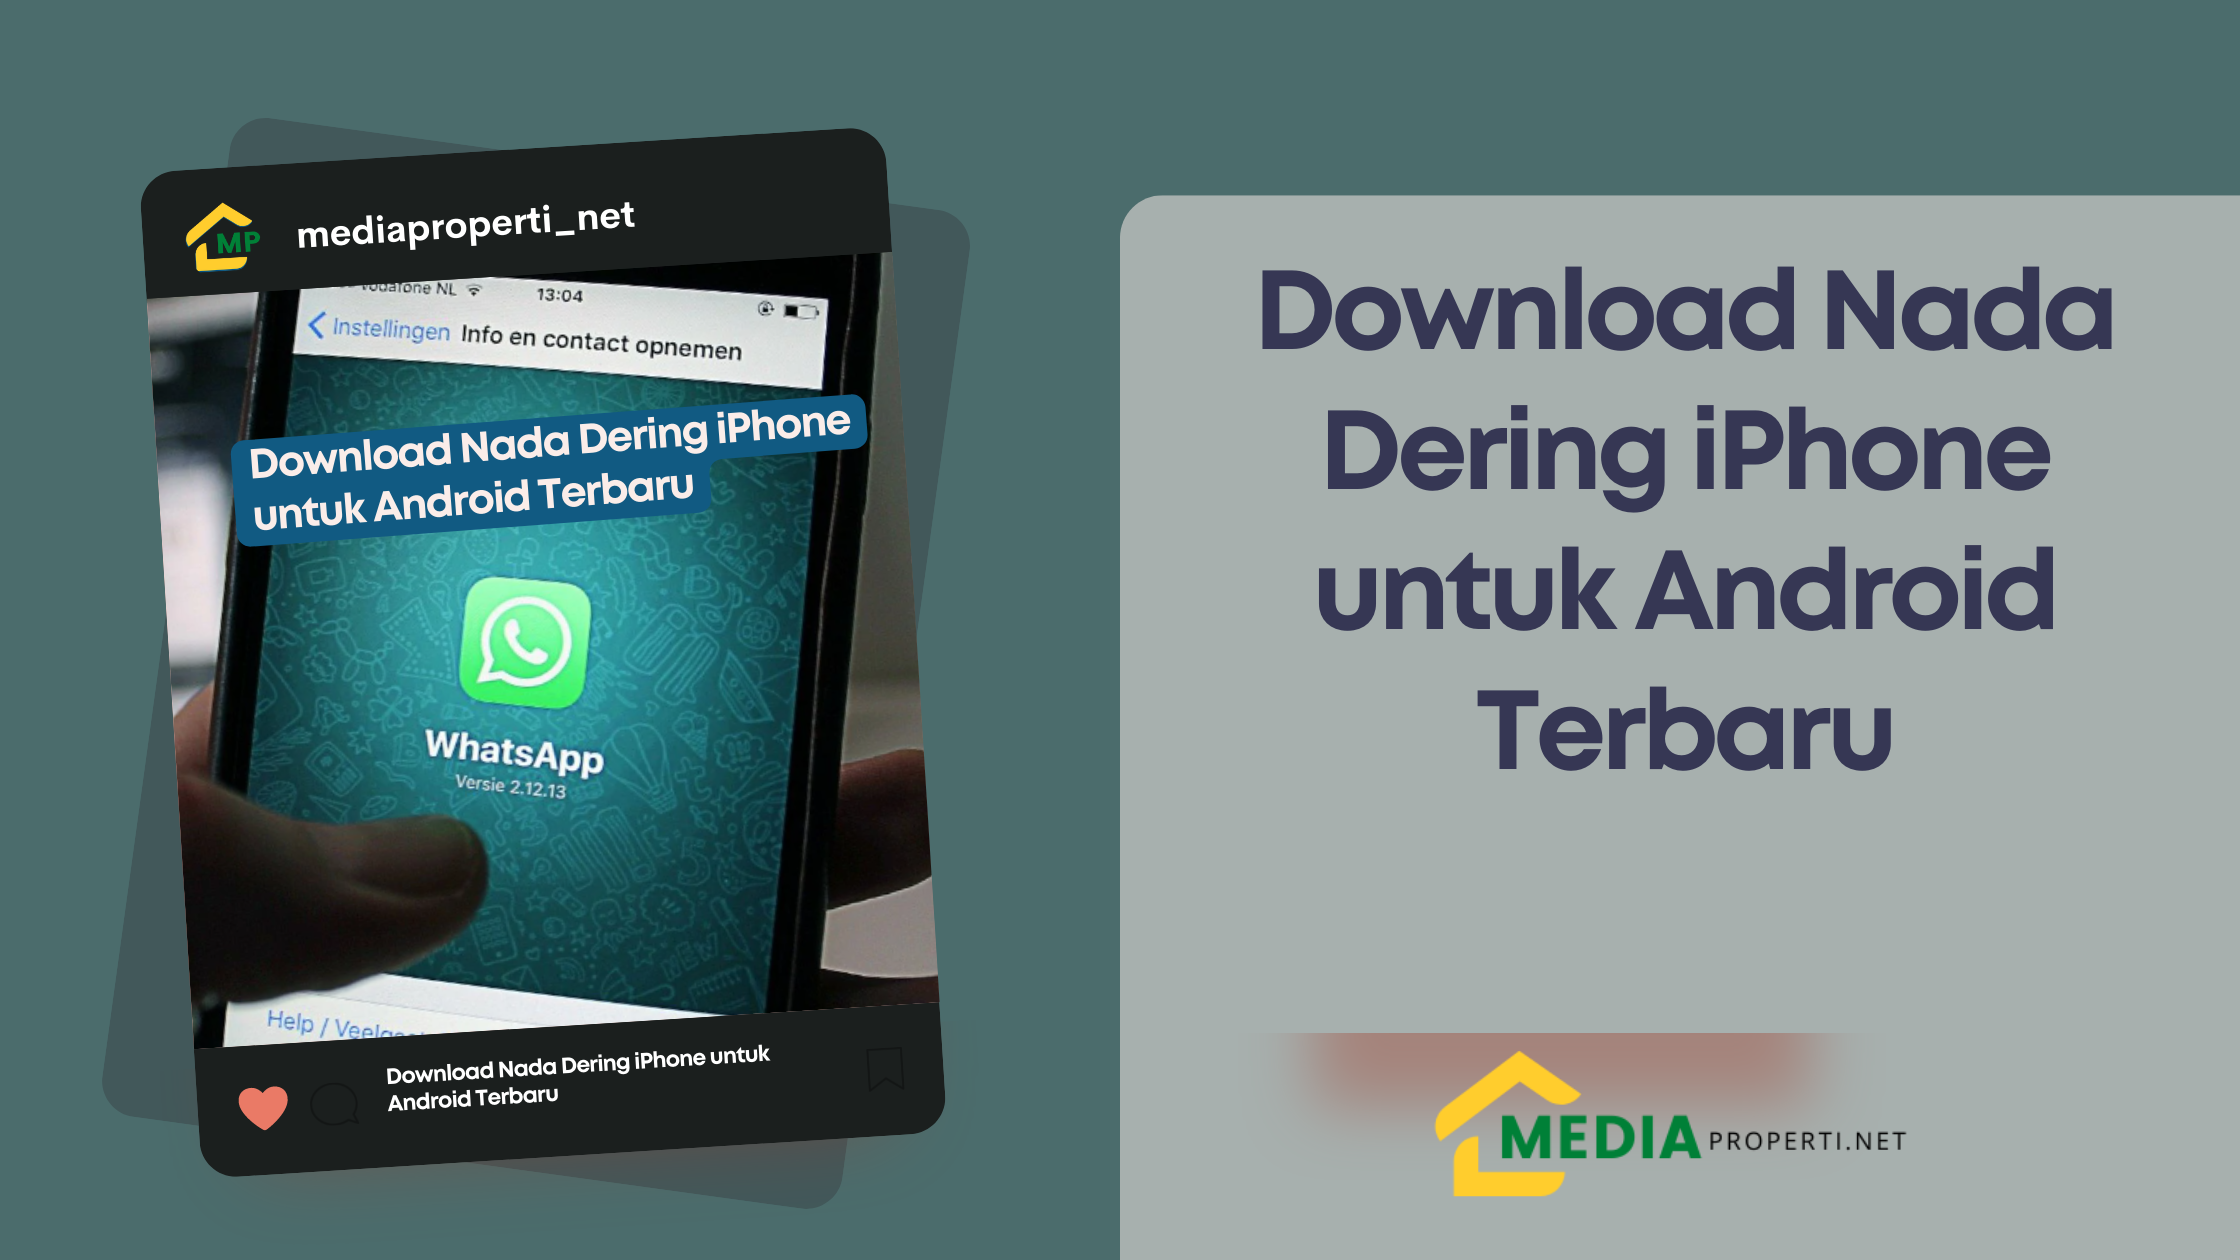 Download Nada Dering iPhone untuk Android Terbaru